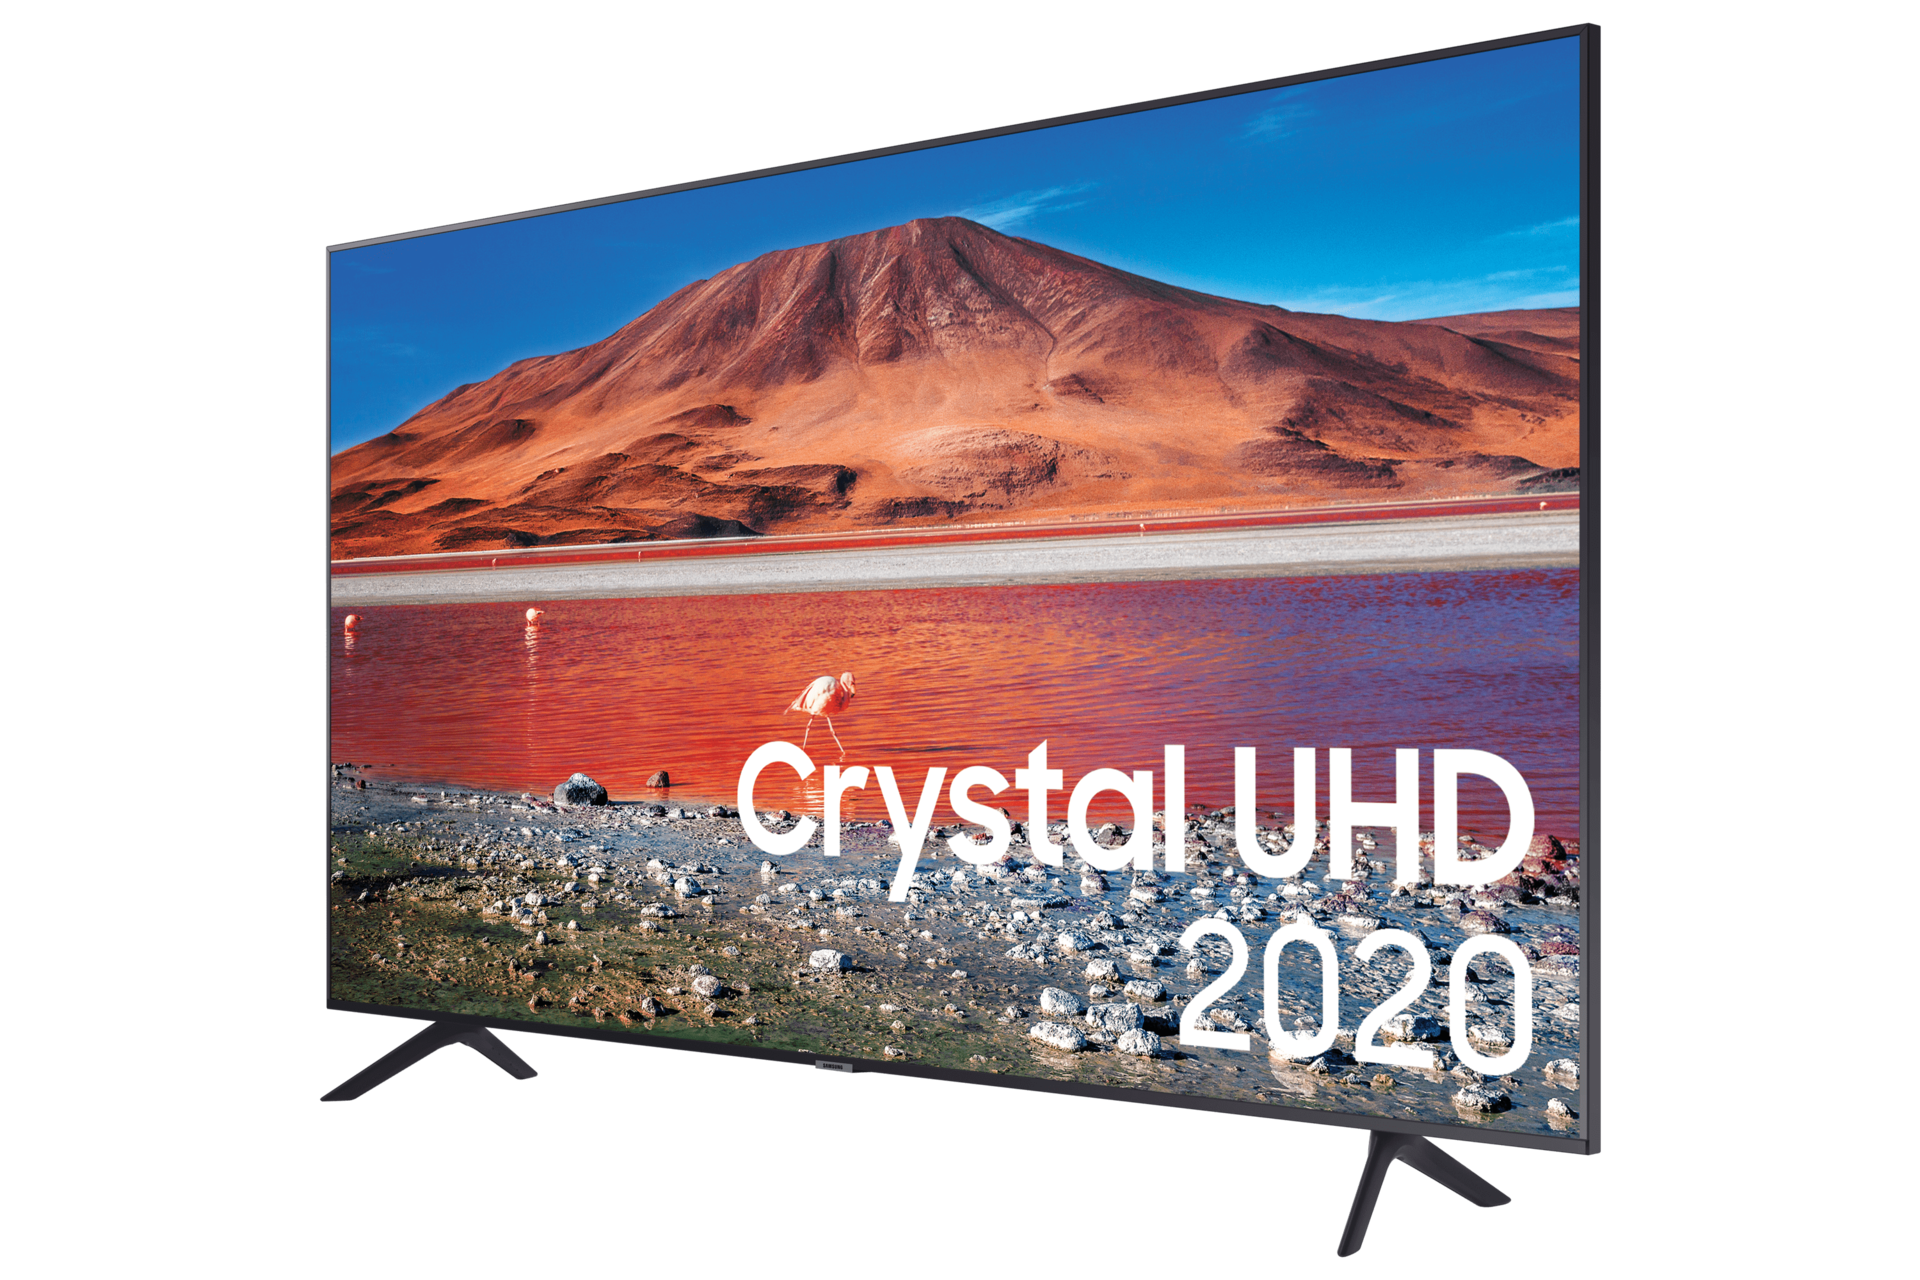 42+ Samsung 43 ultra hd 4k smart tv ee ideas in 2021 